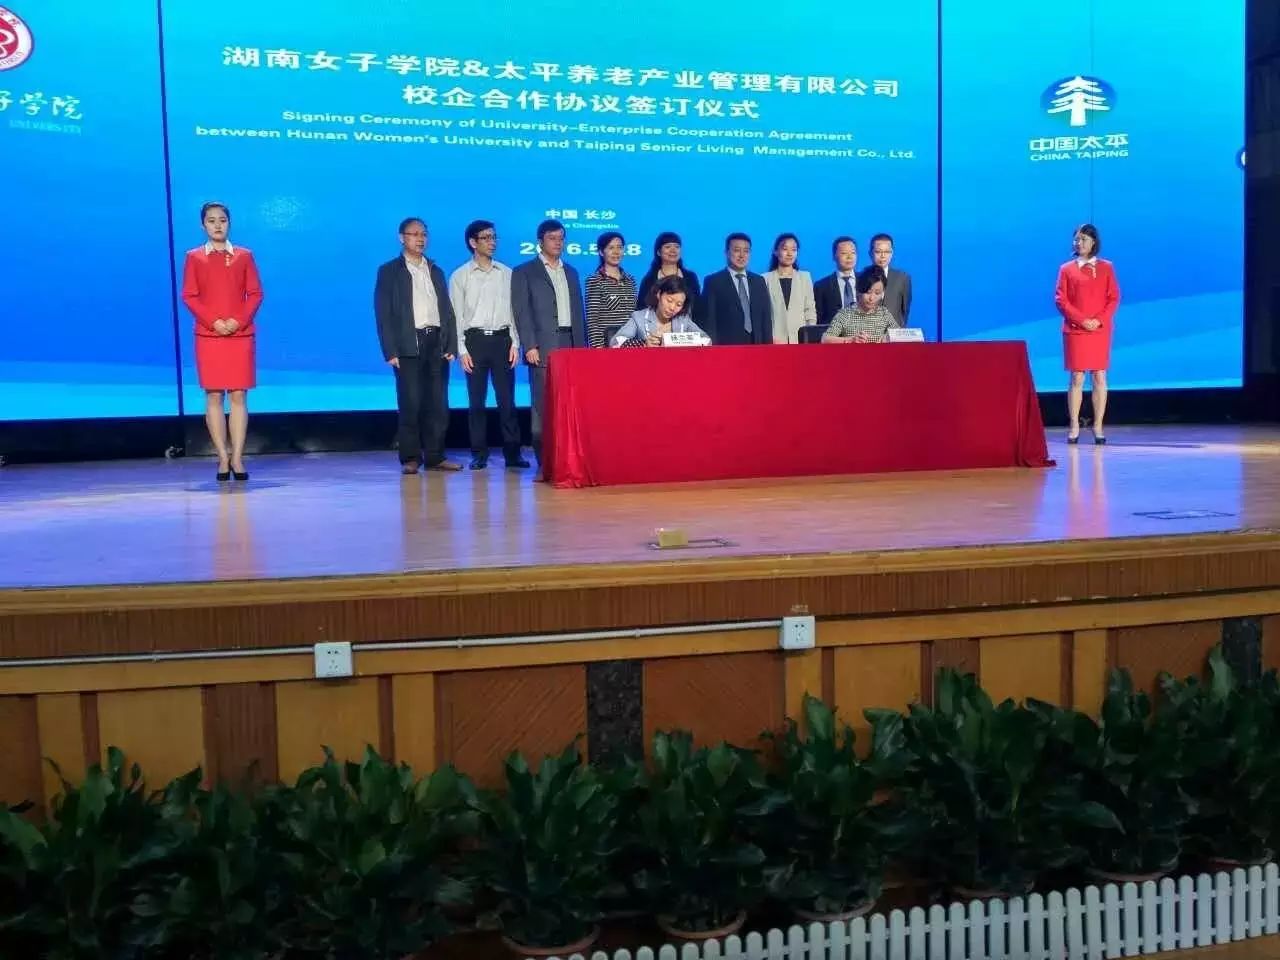 现场|太平养老产业管理公司与湖南女子学院签约   订单式培养专业养护人才破解养老